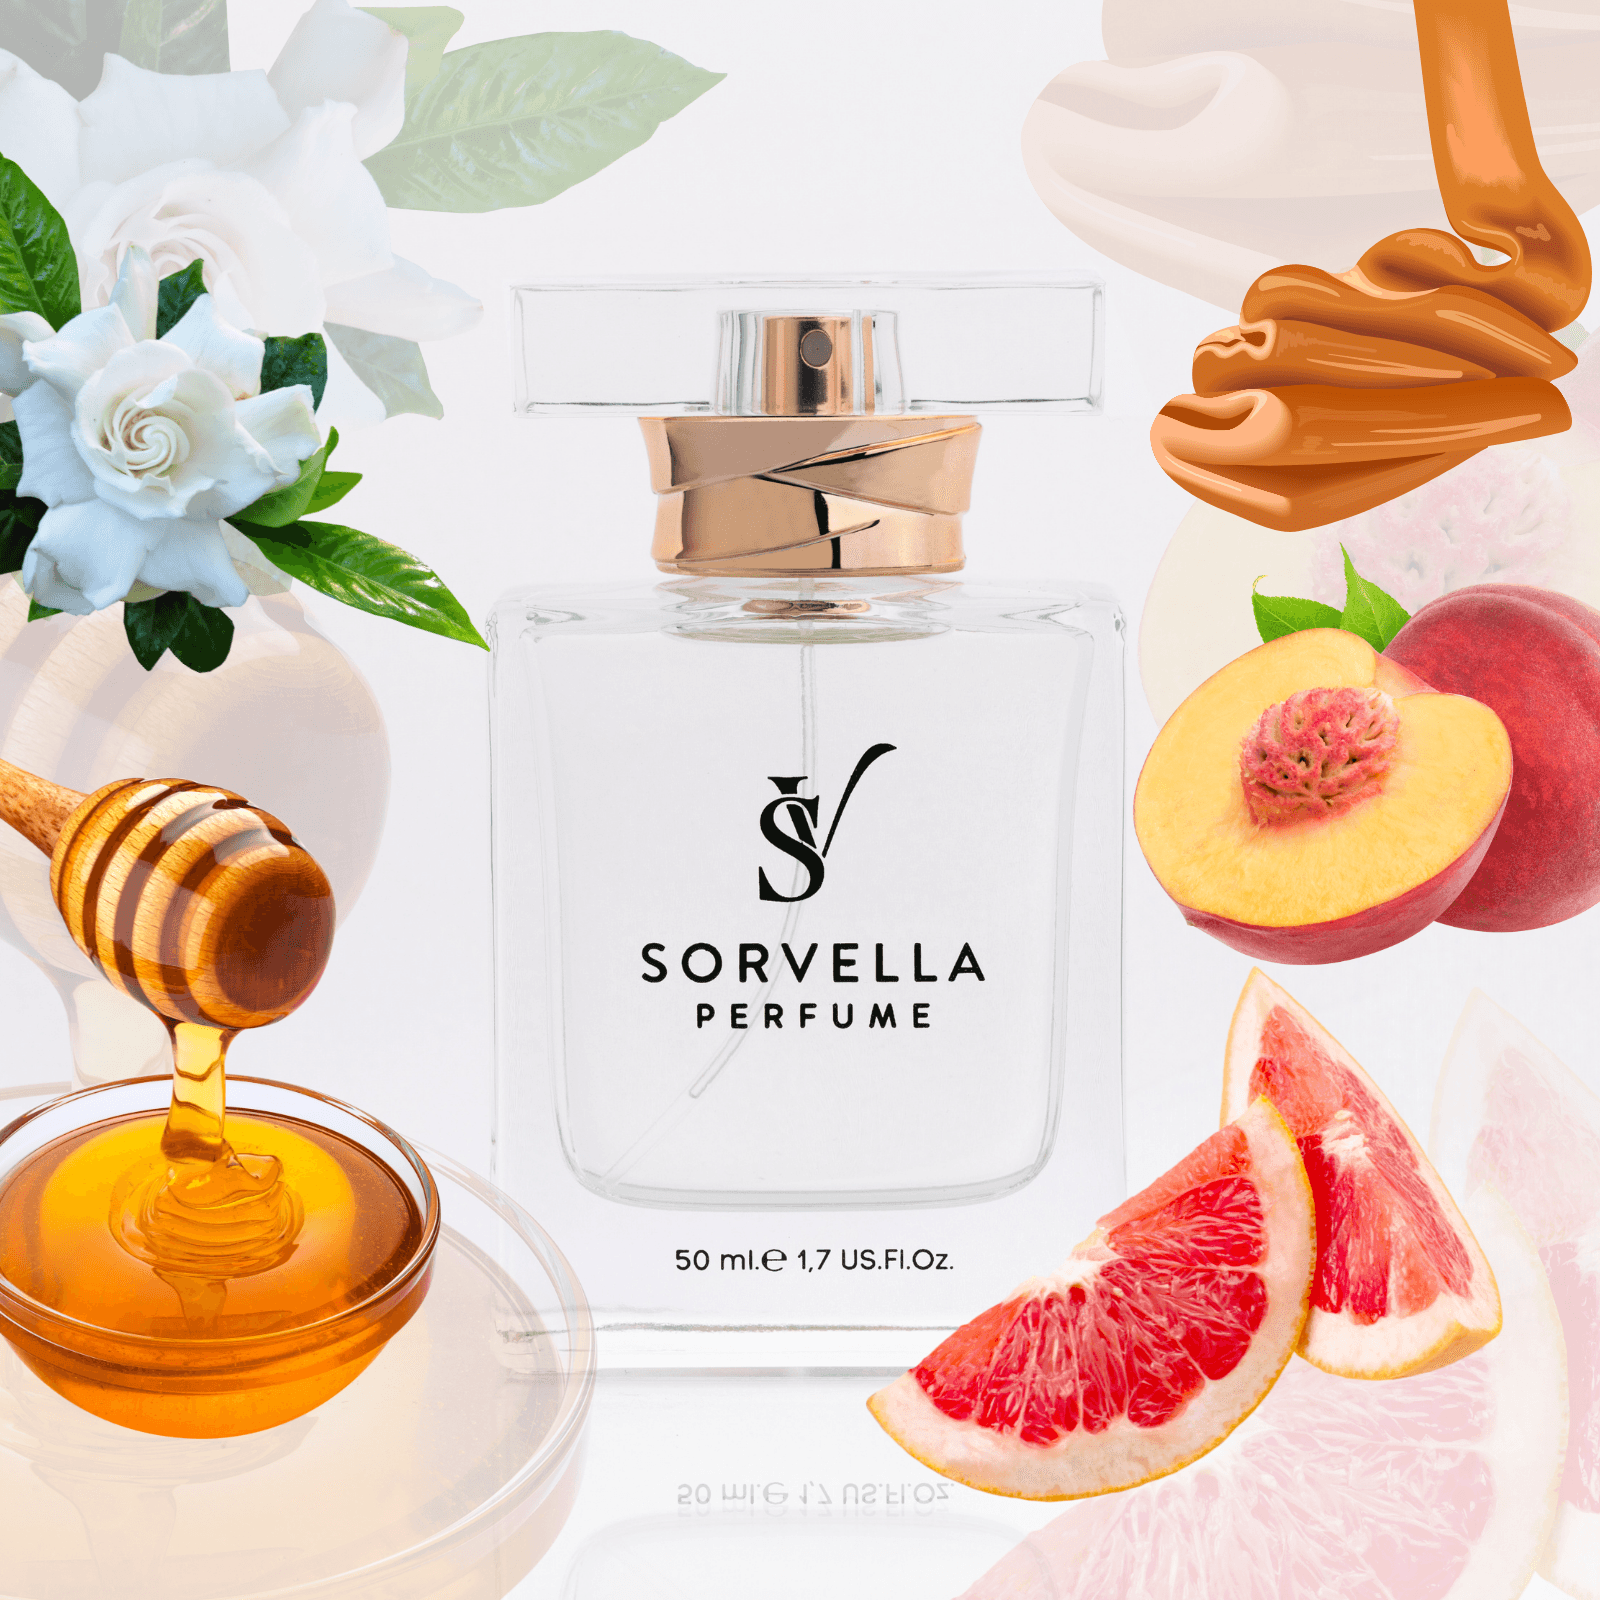 V585 - women's perfume Scandal Sorvella Perfume 50ml